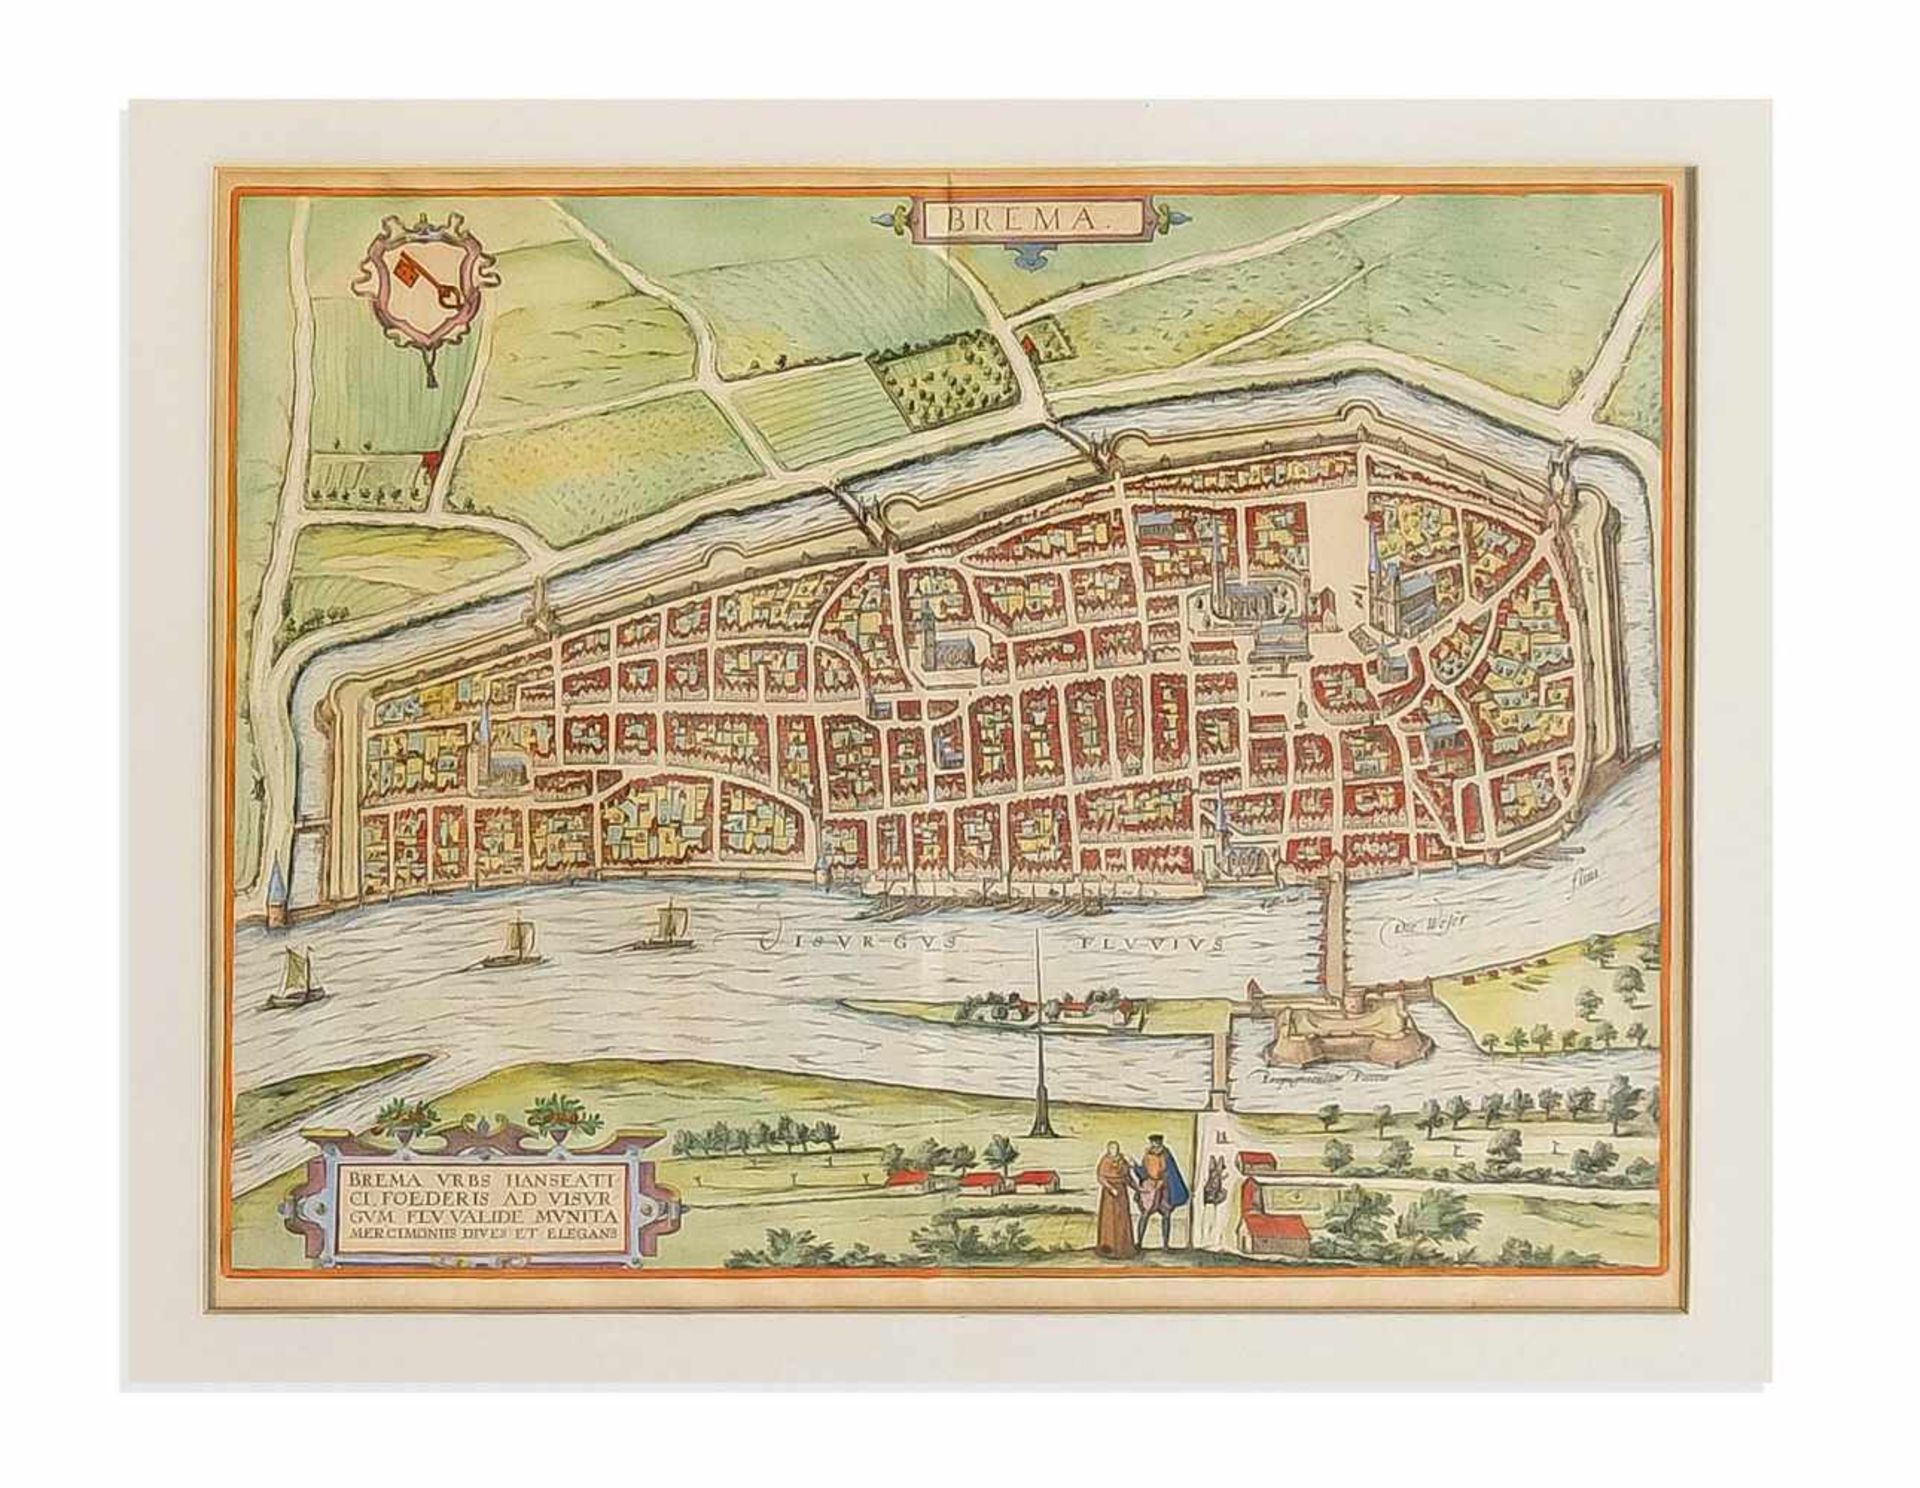 Historische Karte von Bremen. "Brema Urbs Hanseatici Foederis ...". Kupferstich, col., aus"Civitates